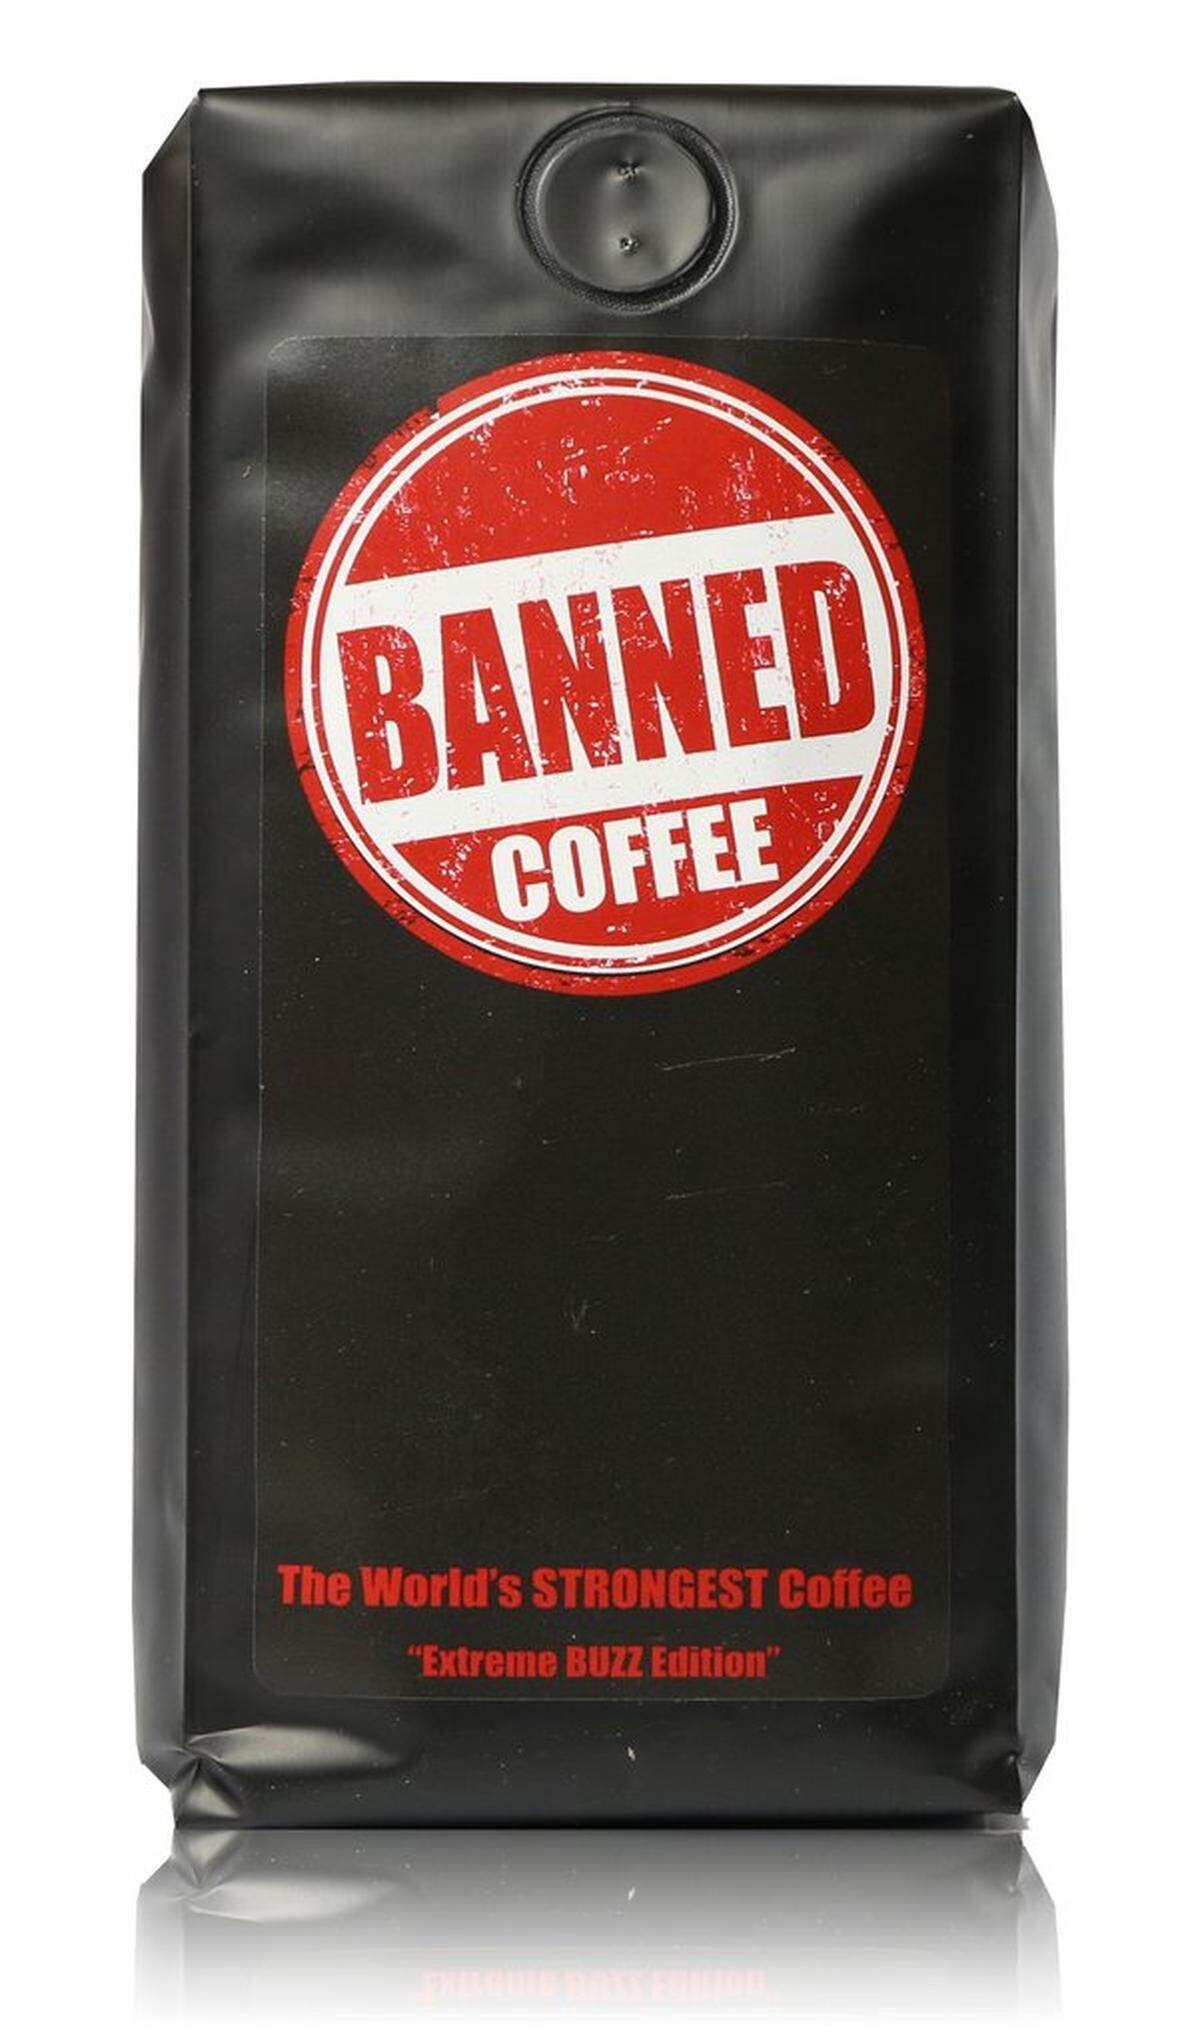 "Banned Coffee" ist verpackt wie ein Scherzartikel ("Extreme Buzz Edition" heißt diese Röstung), der Inhalt - Kaffee aus Arabica- und Robusta-Bohnen - ist allerdings echt und ernst gemeint. 100 Milliliter des Kaffees beinhalten 133,6 Milligram Koffein.